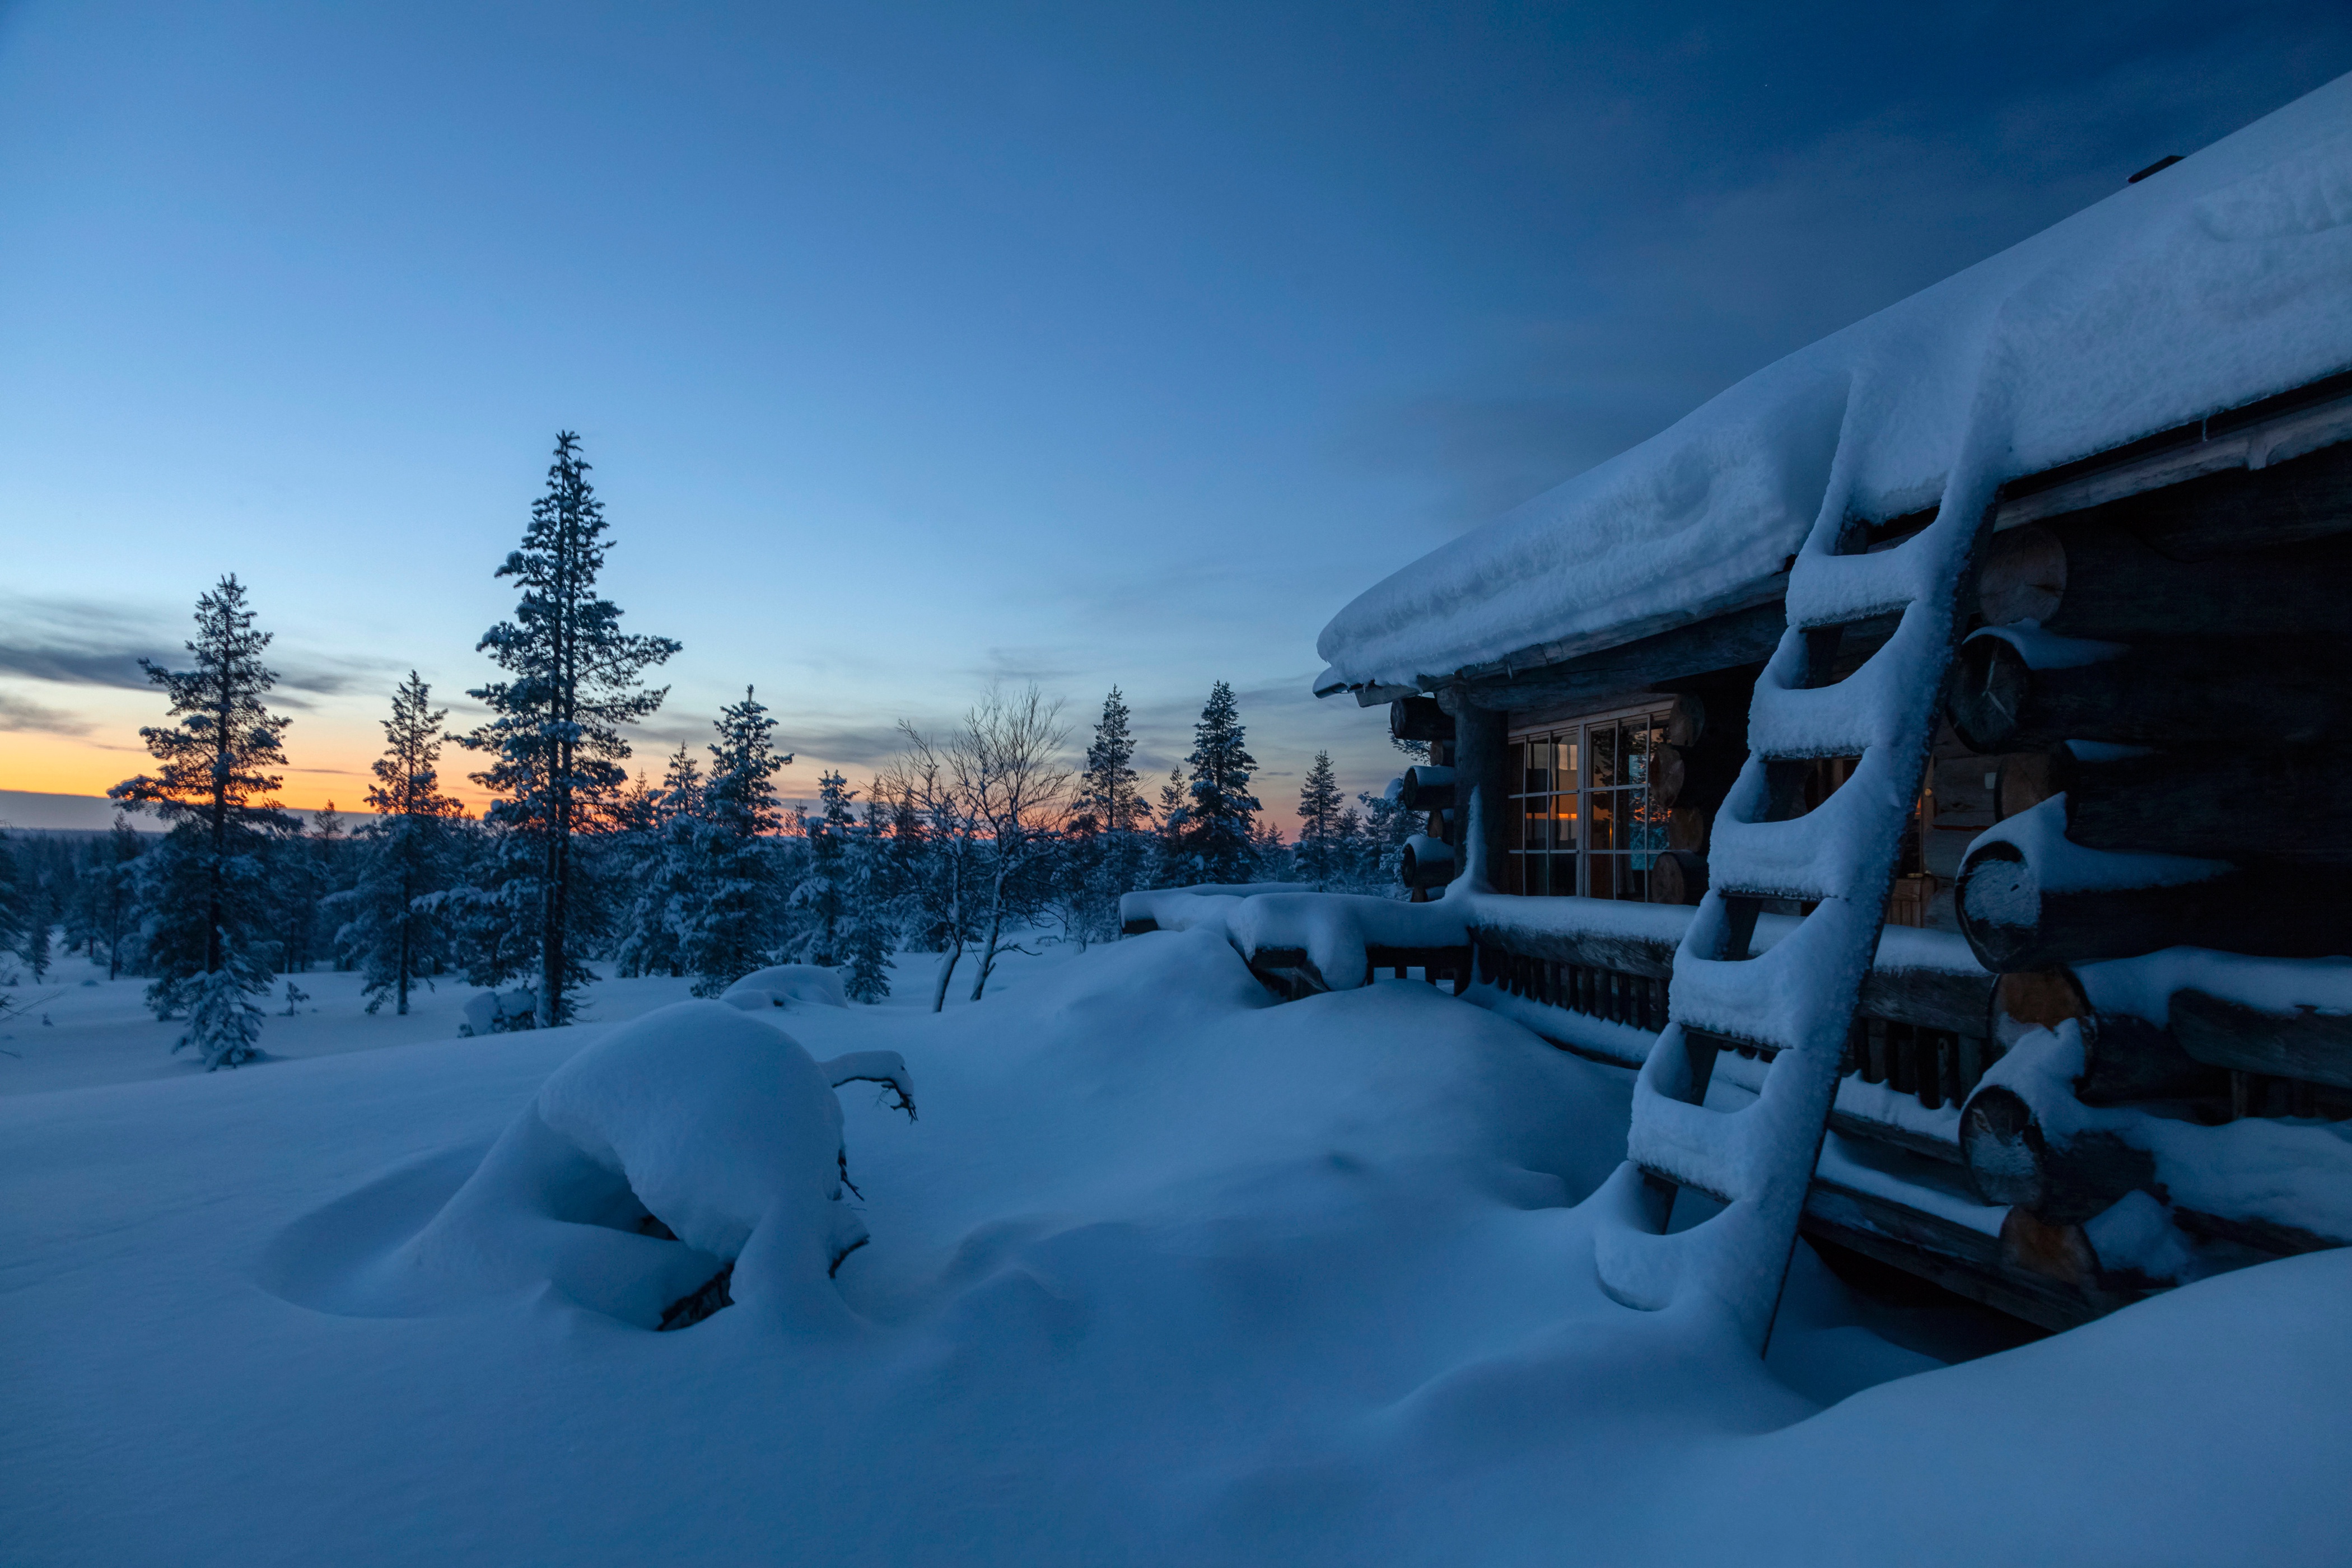 Скачать обои бесплатно Зима, Закат, Снег, Домик, Фотографии, Финляндия картинка на рабочий стол ПК